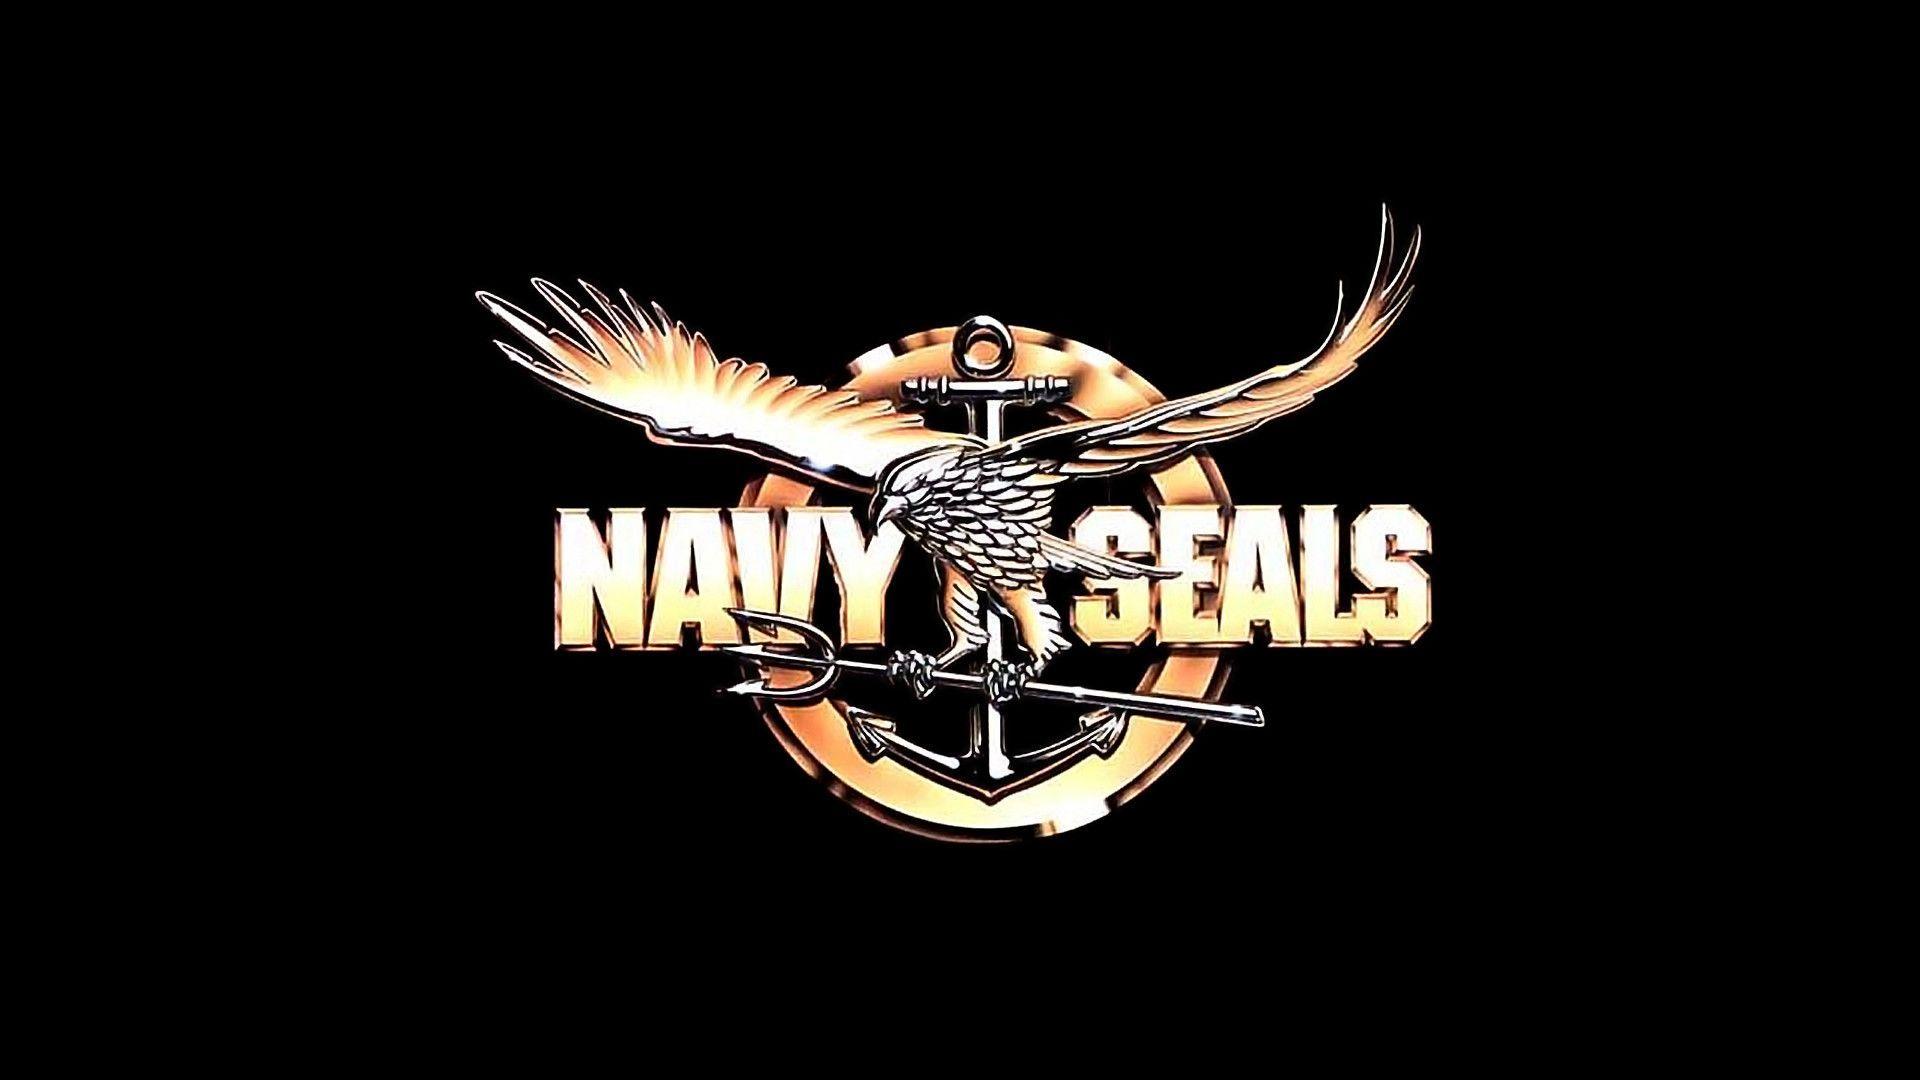 Navy SEAL Logo - Navy Seals Logo Wallpaper